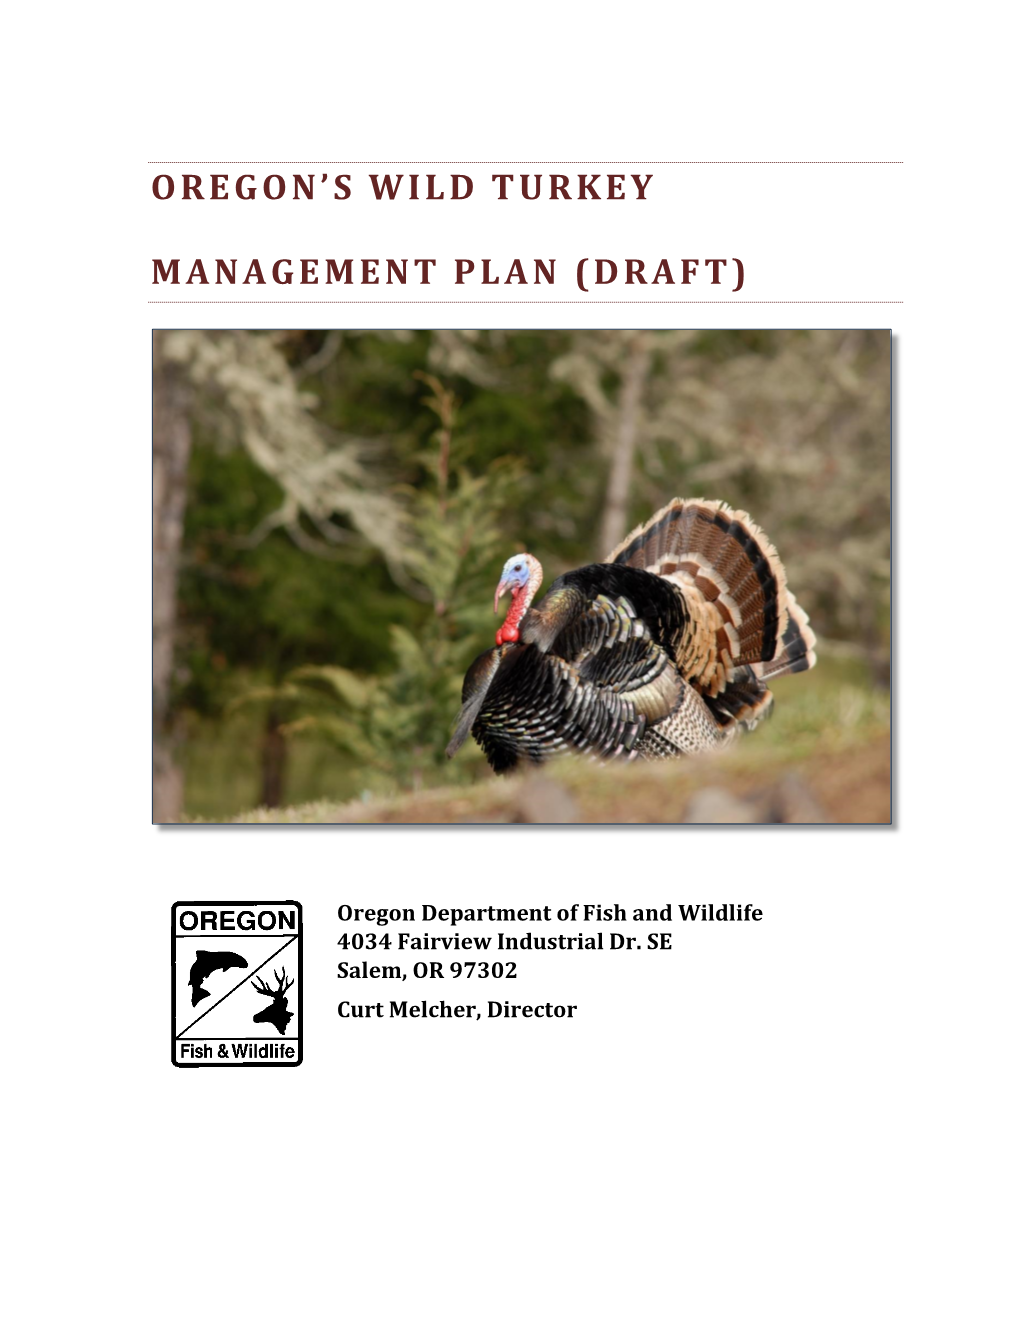 Oregon's Wild Turkey Management Plan (Draft)